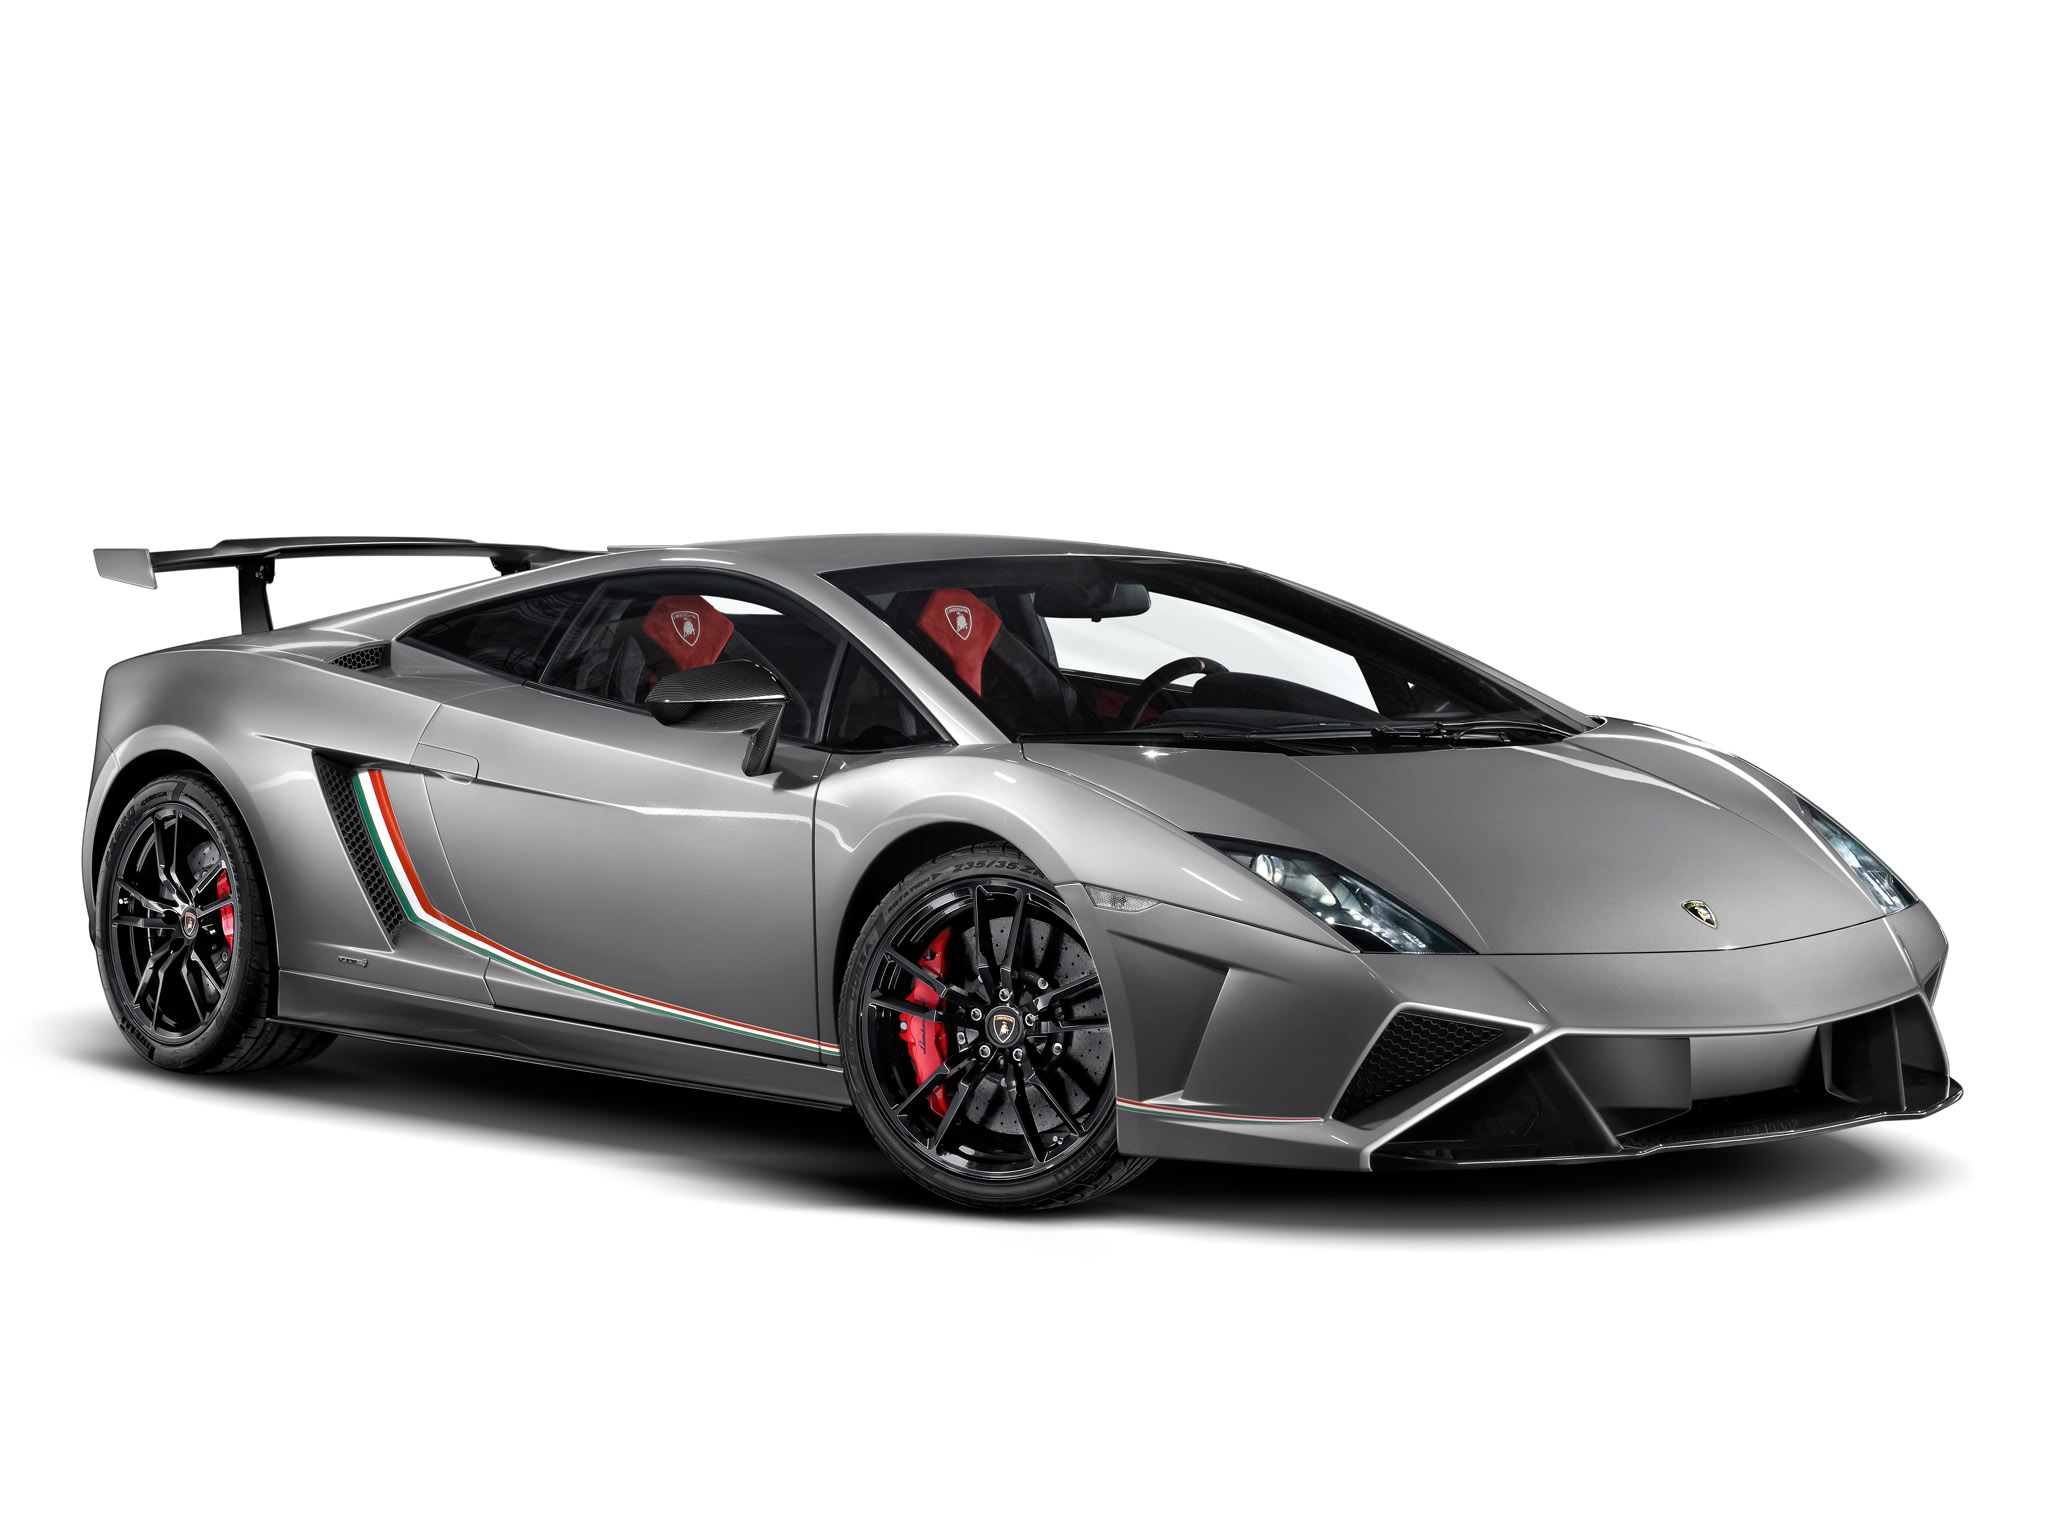 2013, Lamborghini, Gallardo, Lp570 4, Squadra, Corse, Supercar, Supercars Wallpaper